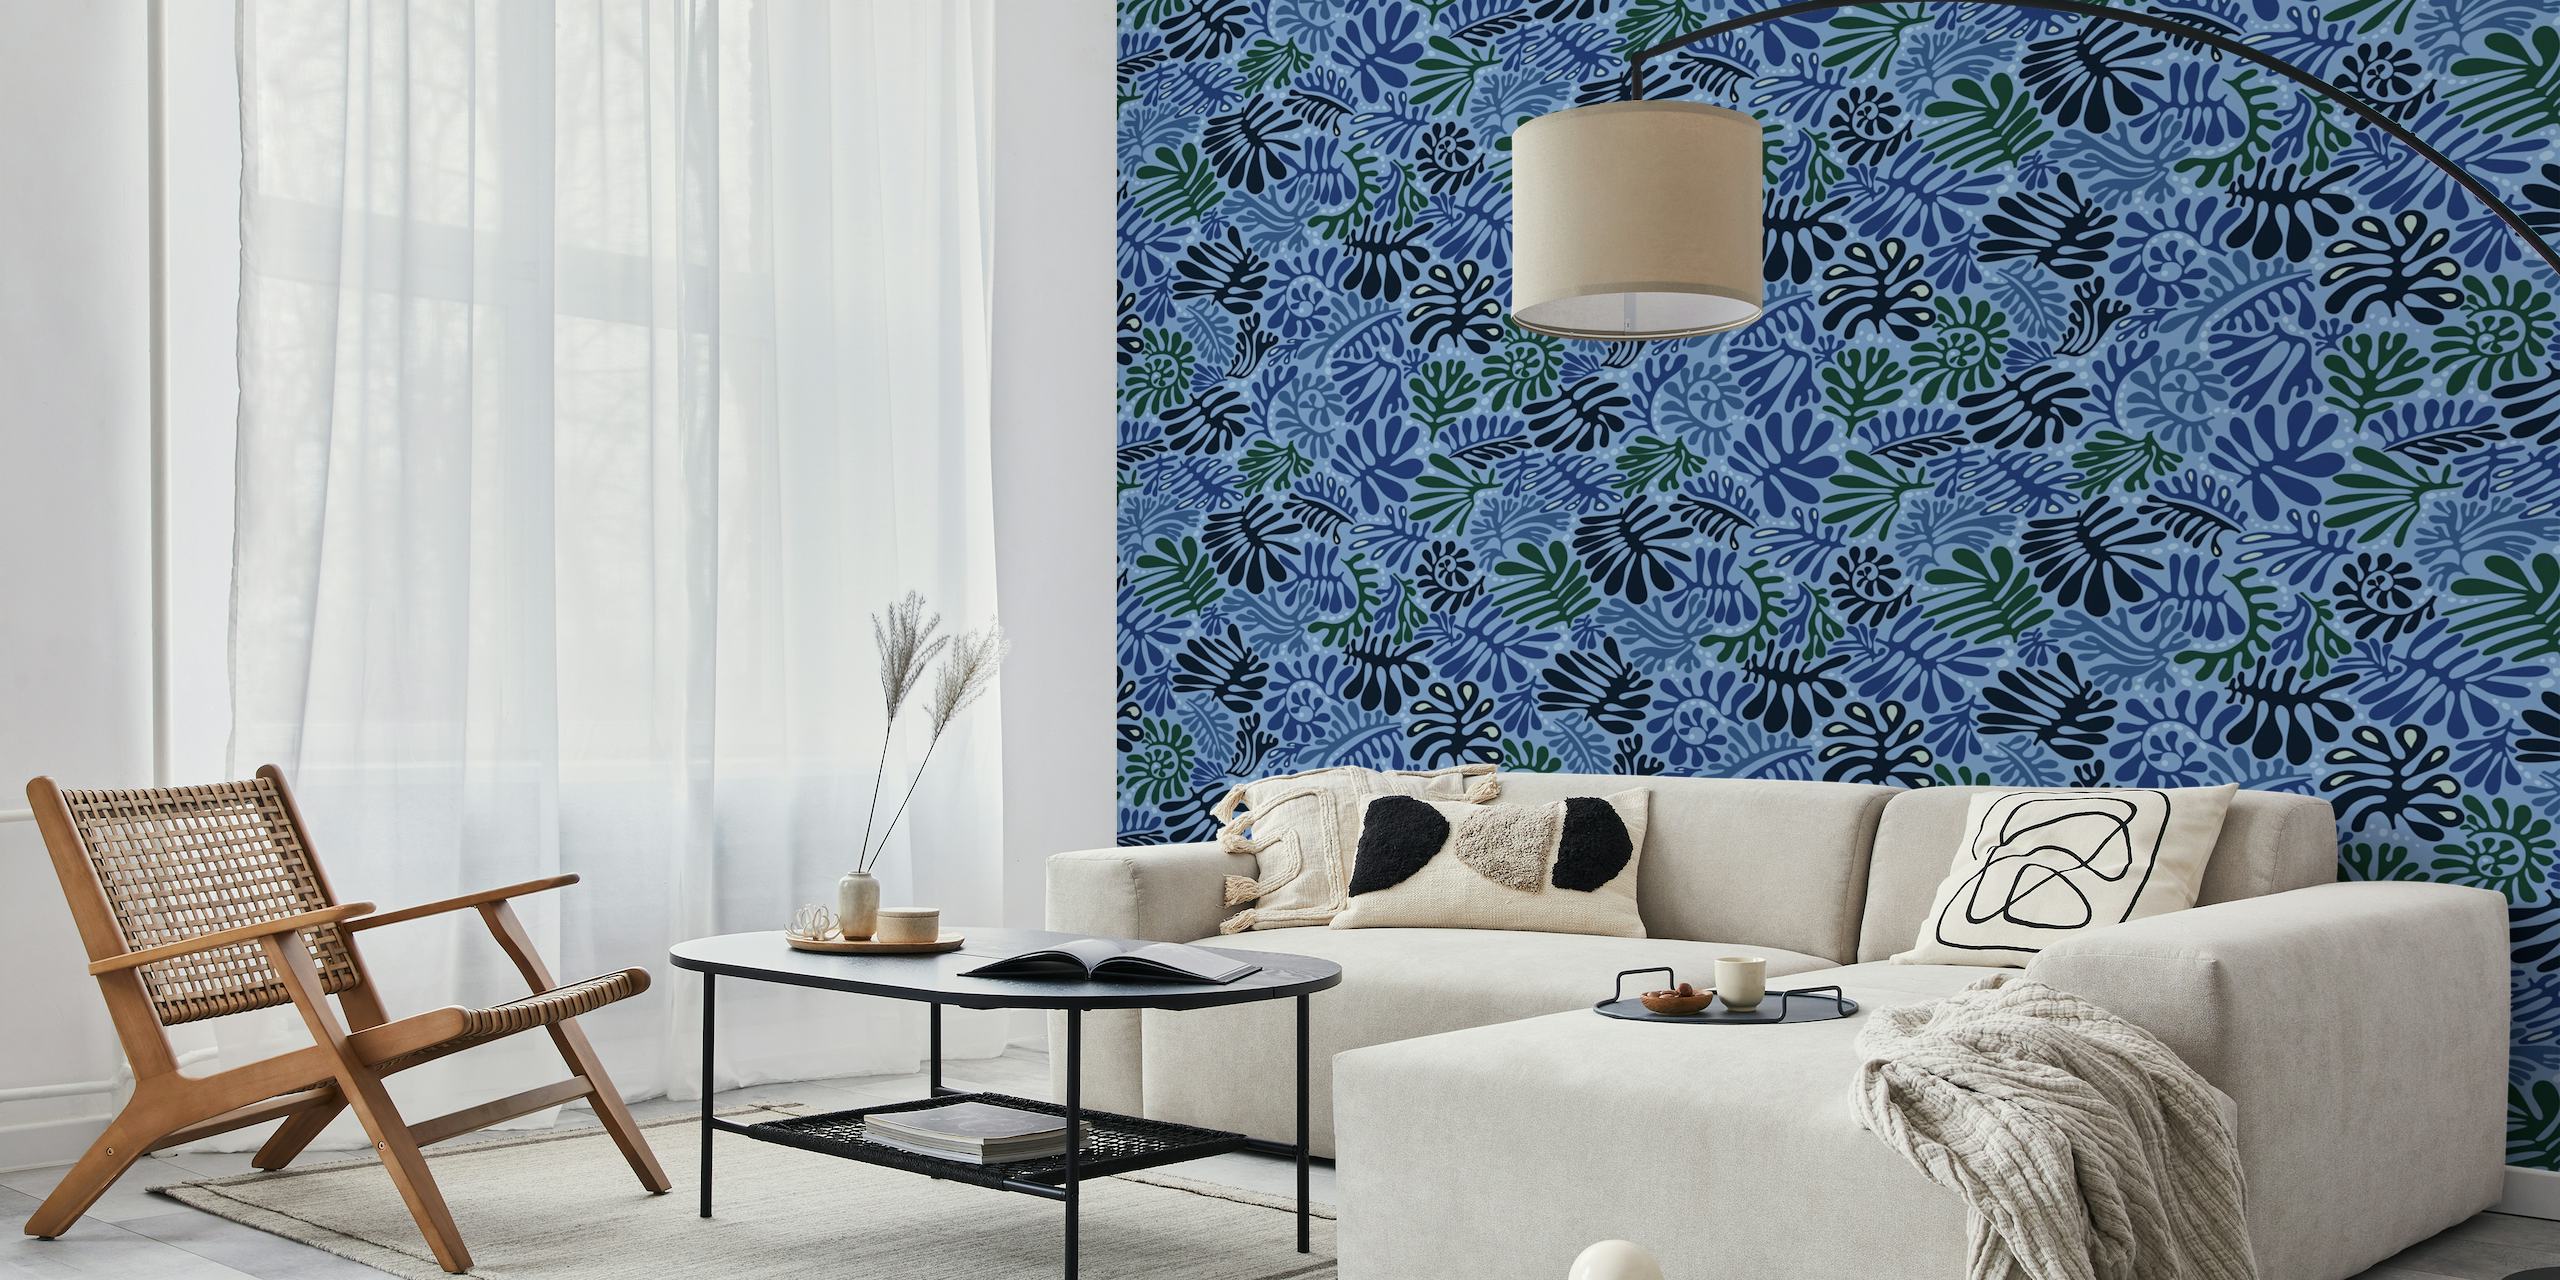 Stilfuldt blåt bladmønstret vægmaleri fra happywall.com med forskellige blå nuancer og planteudskæringsdesign.